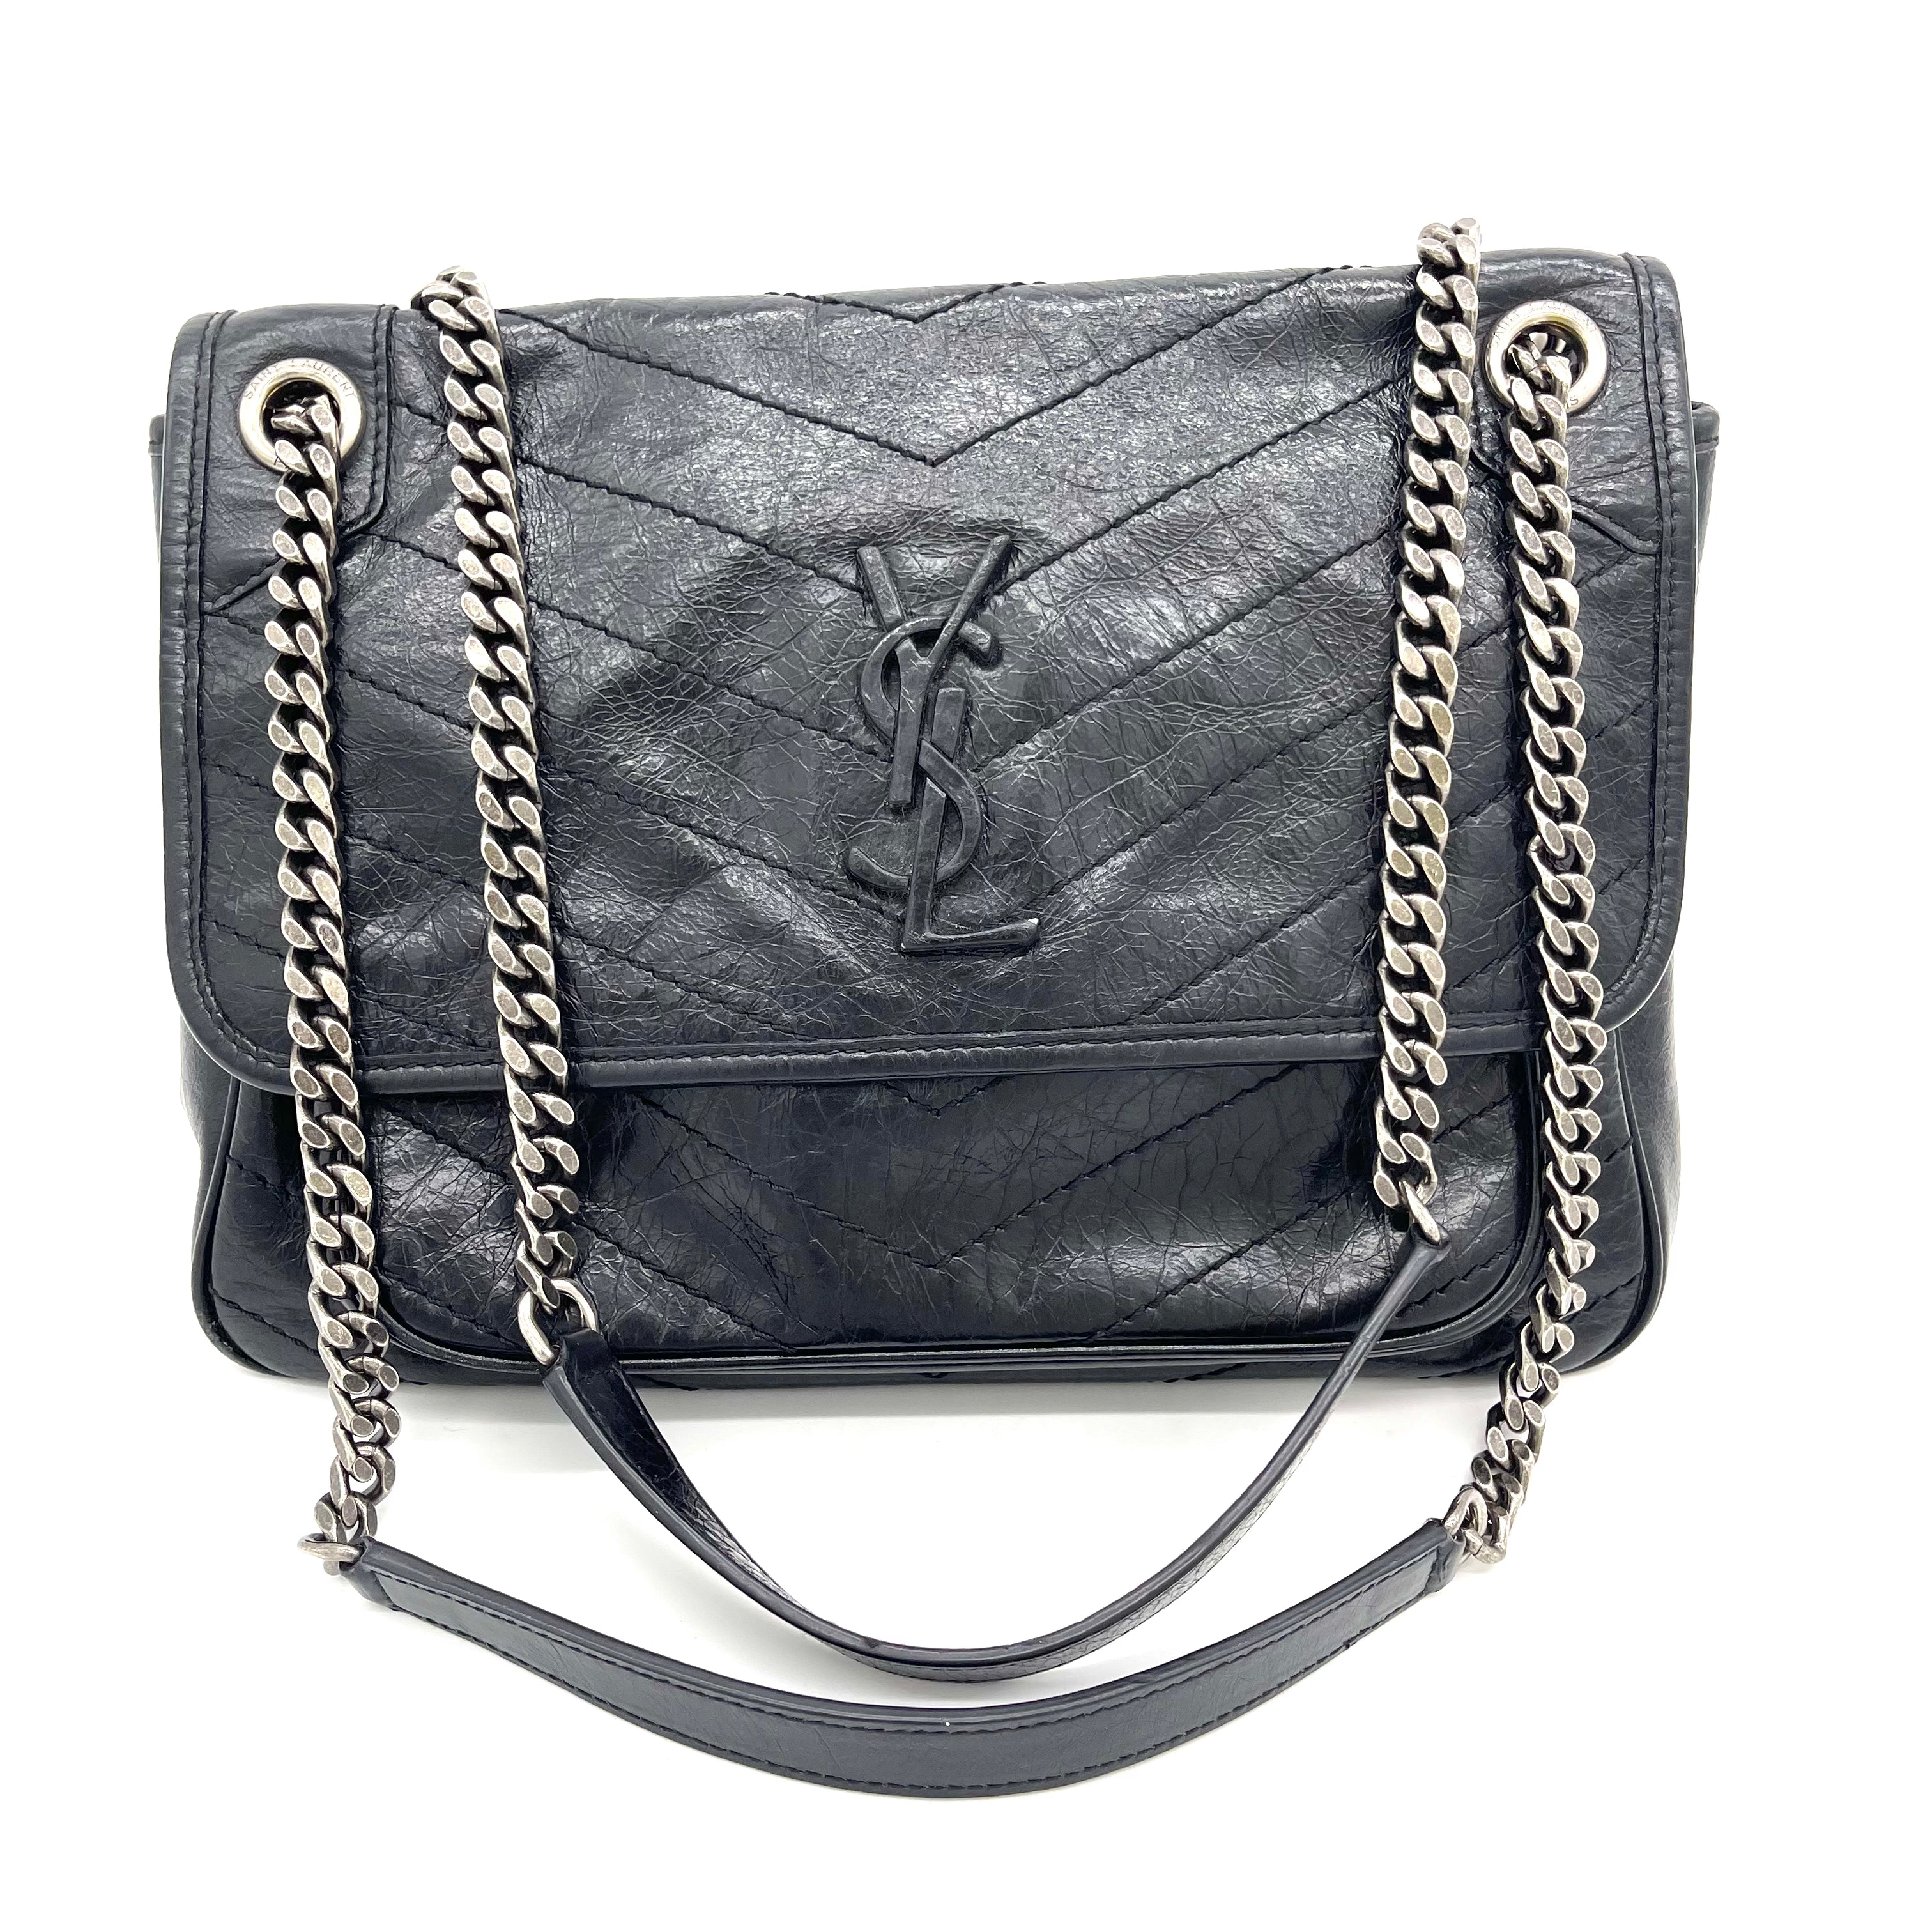 Yves Saint Laurent Niki Bags & Handbags for Women for sale